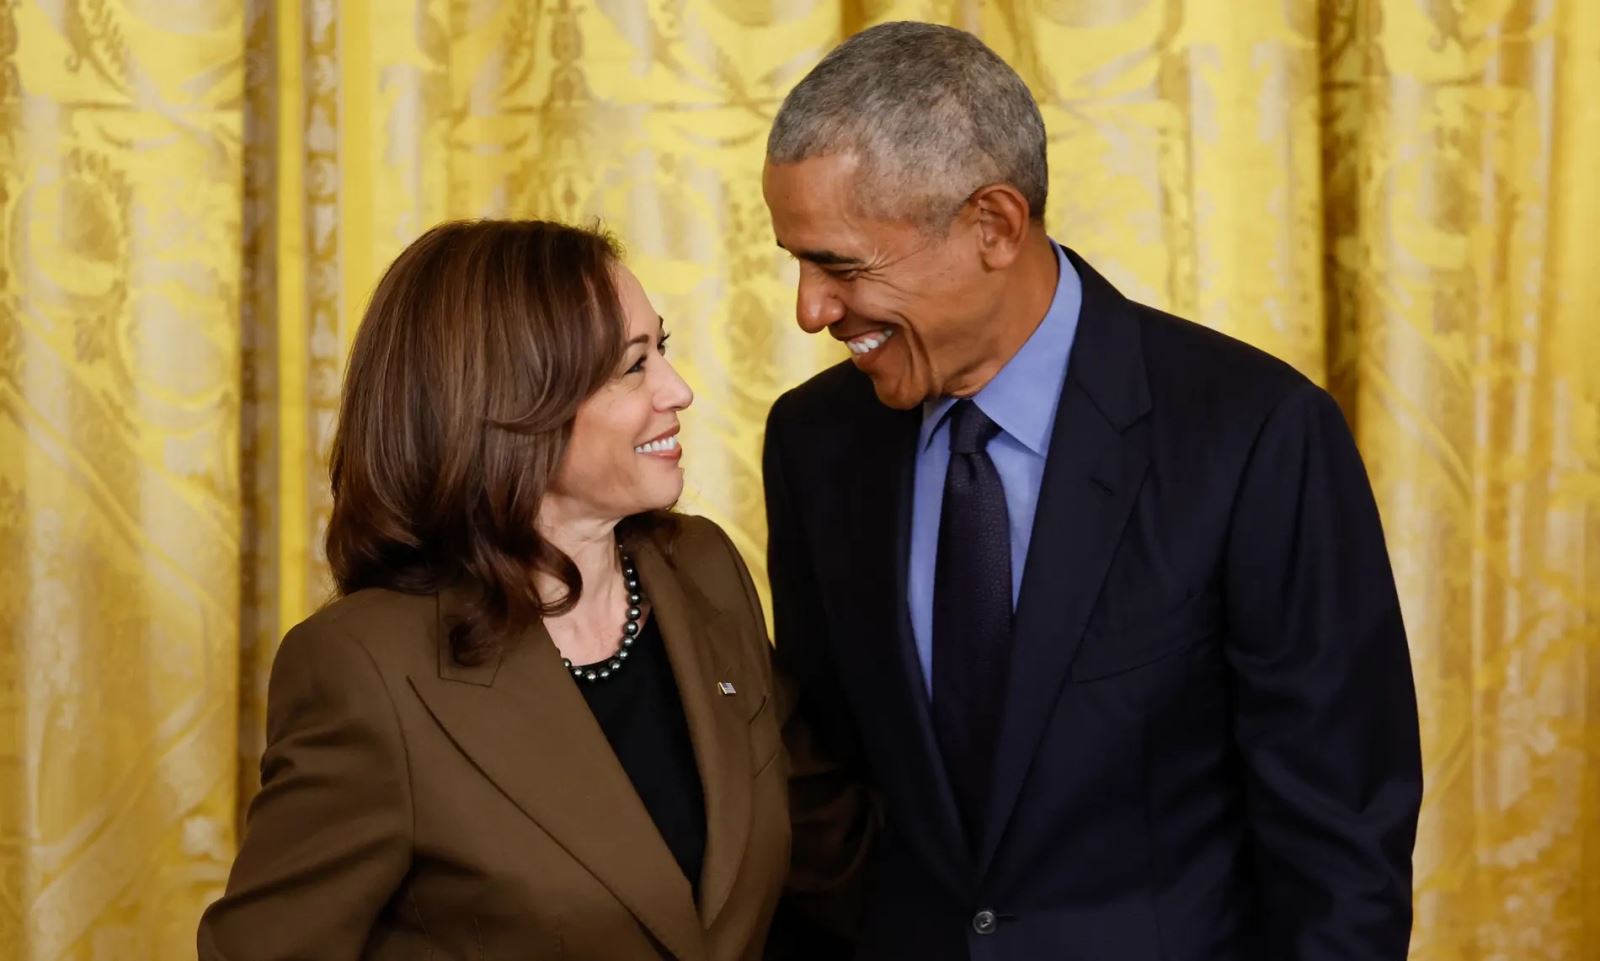 Bà Kamala Harris (bên trái) và cựu Tổng thống Barack Obama tham dự một sự kiện tại Nhà Trắng vào ngày 5/4/2022. Ảnh: Chip Somodevilla/Getty Images